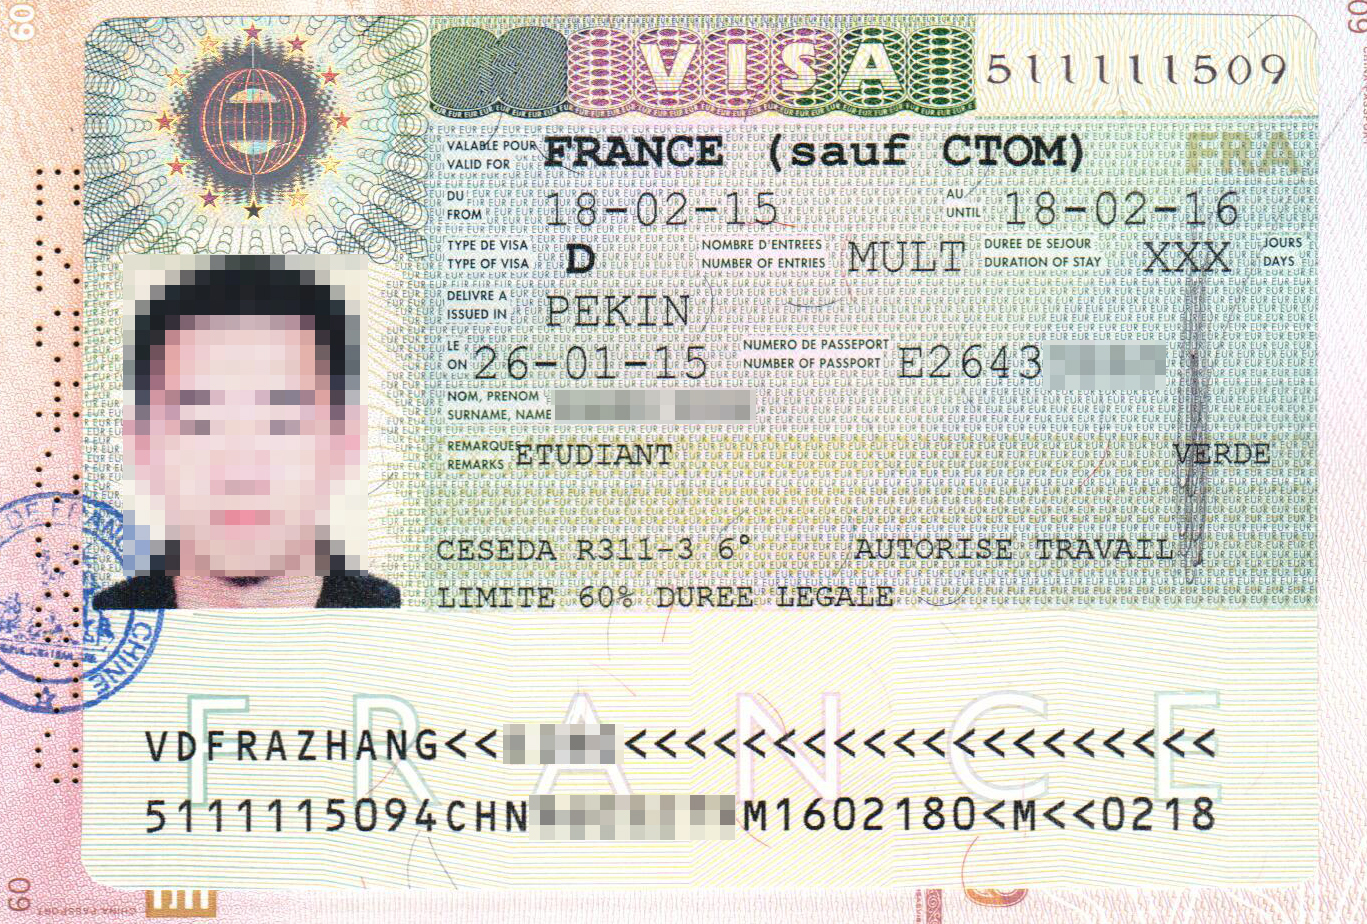 法国签证照片尺寸是2寸吗_法国签证照片尺寸大小_法国签证照片尺寸要求